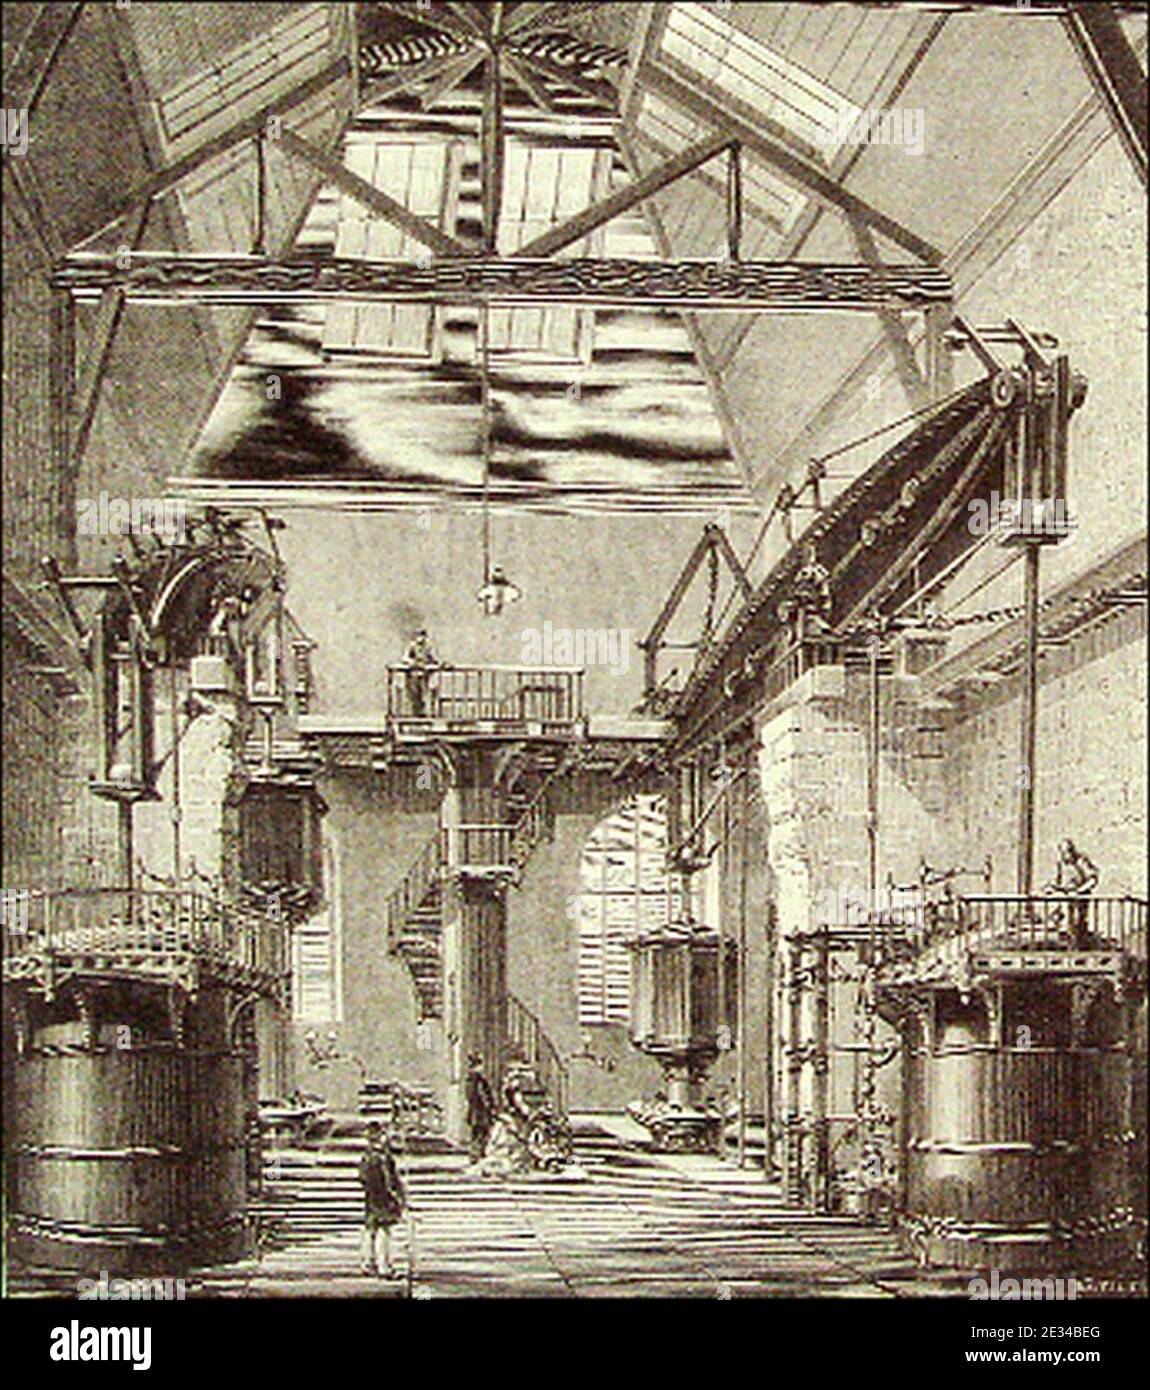 Macchina di Marly. La pompe à feu de Chaillot vers 1880 Foto stock - Alamy